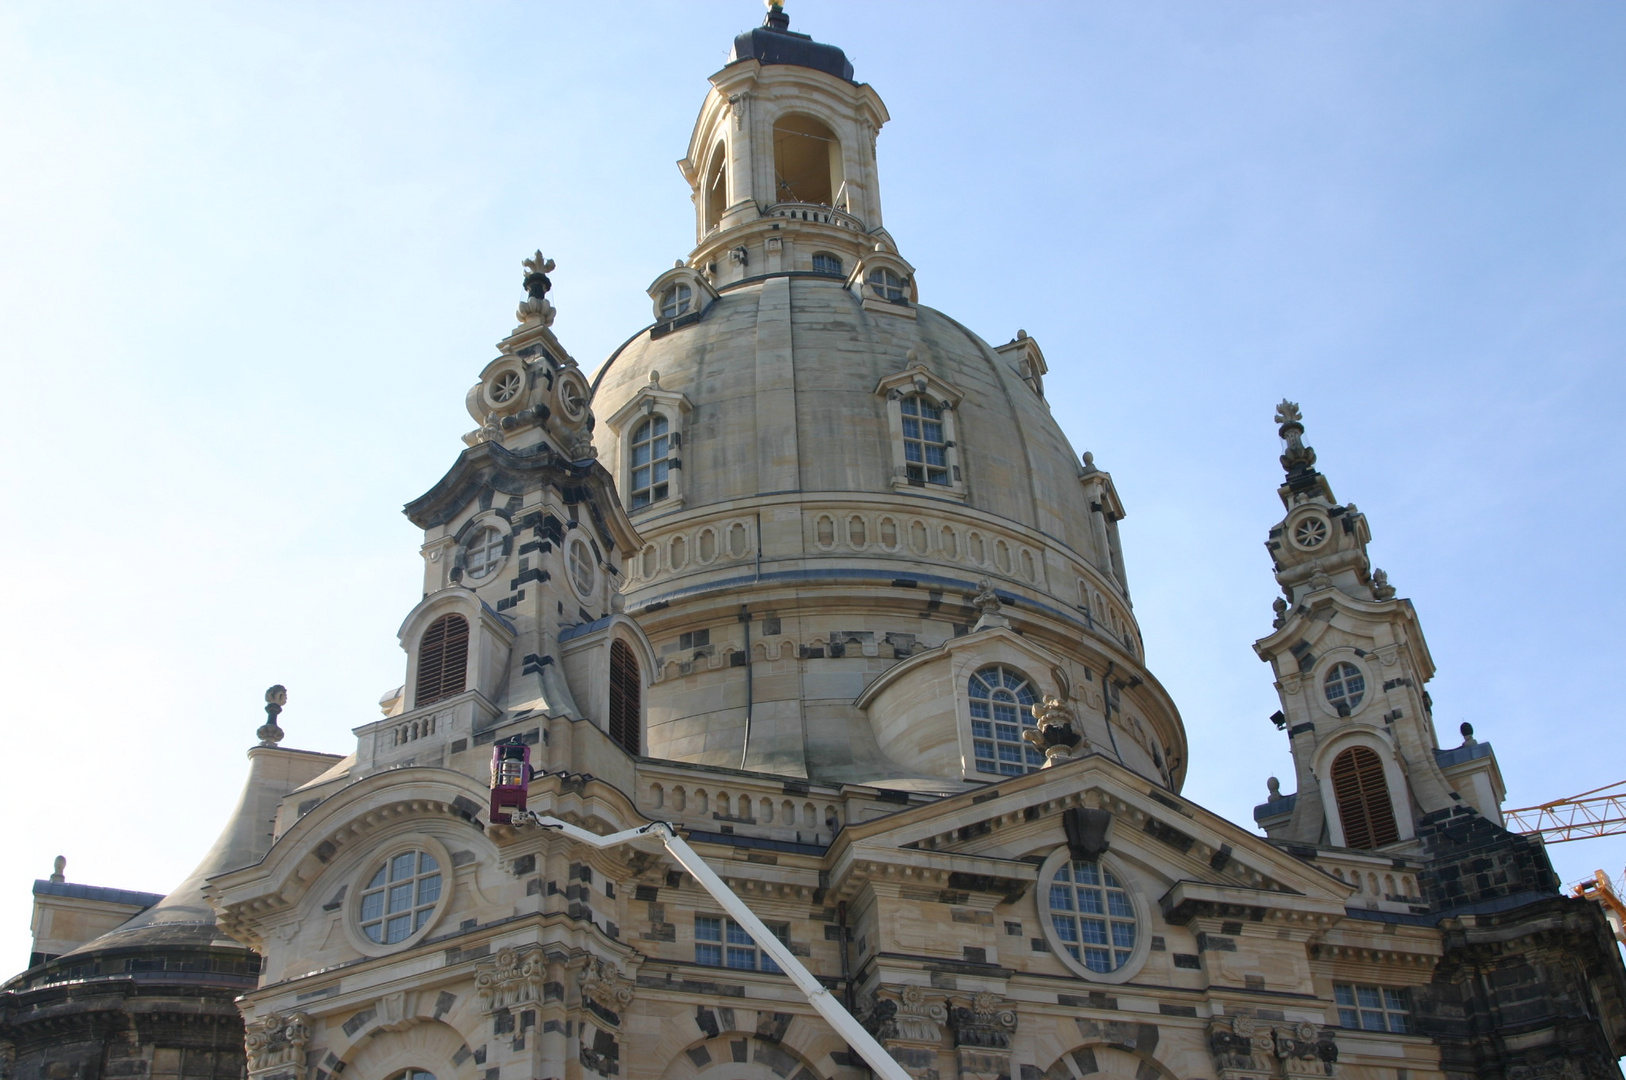 Blick zur Aussichteplattform auf dem Turm der Frauenkirche